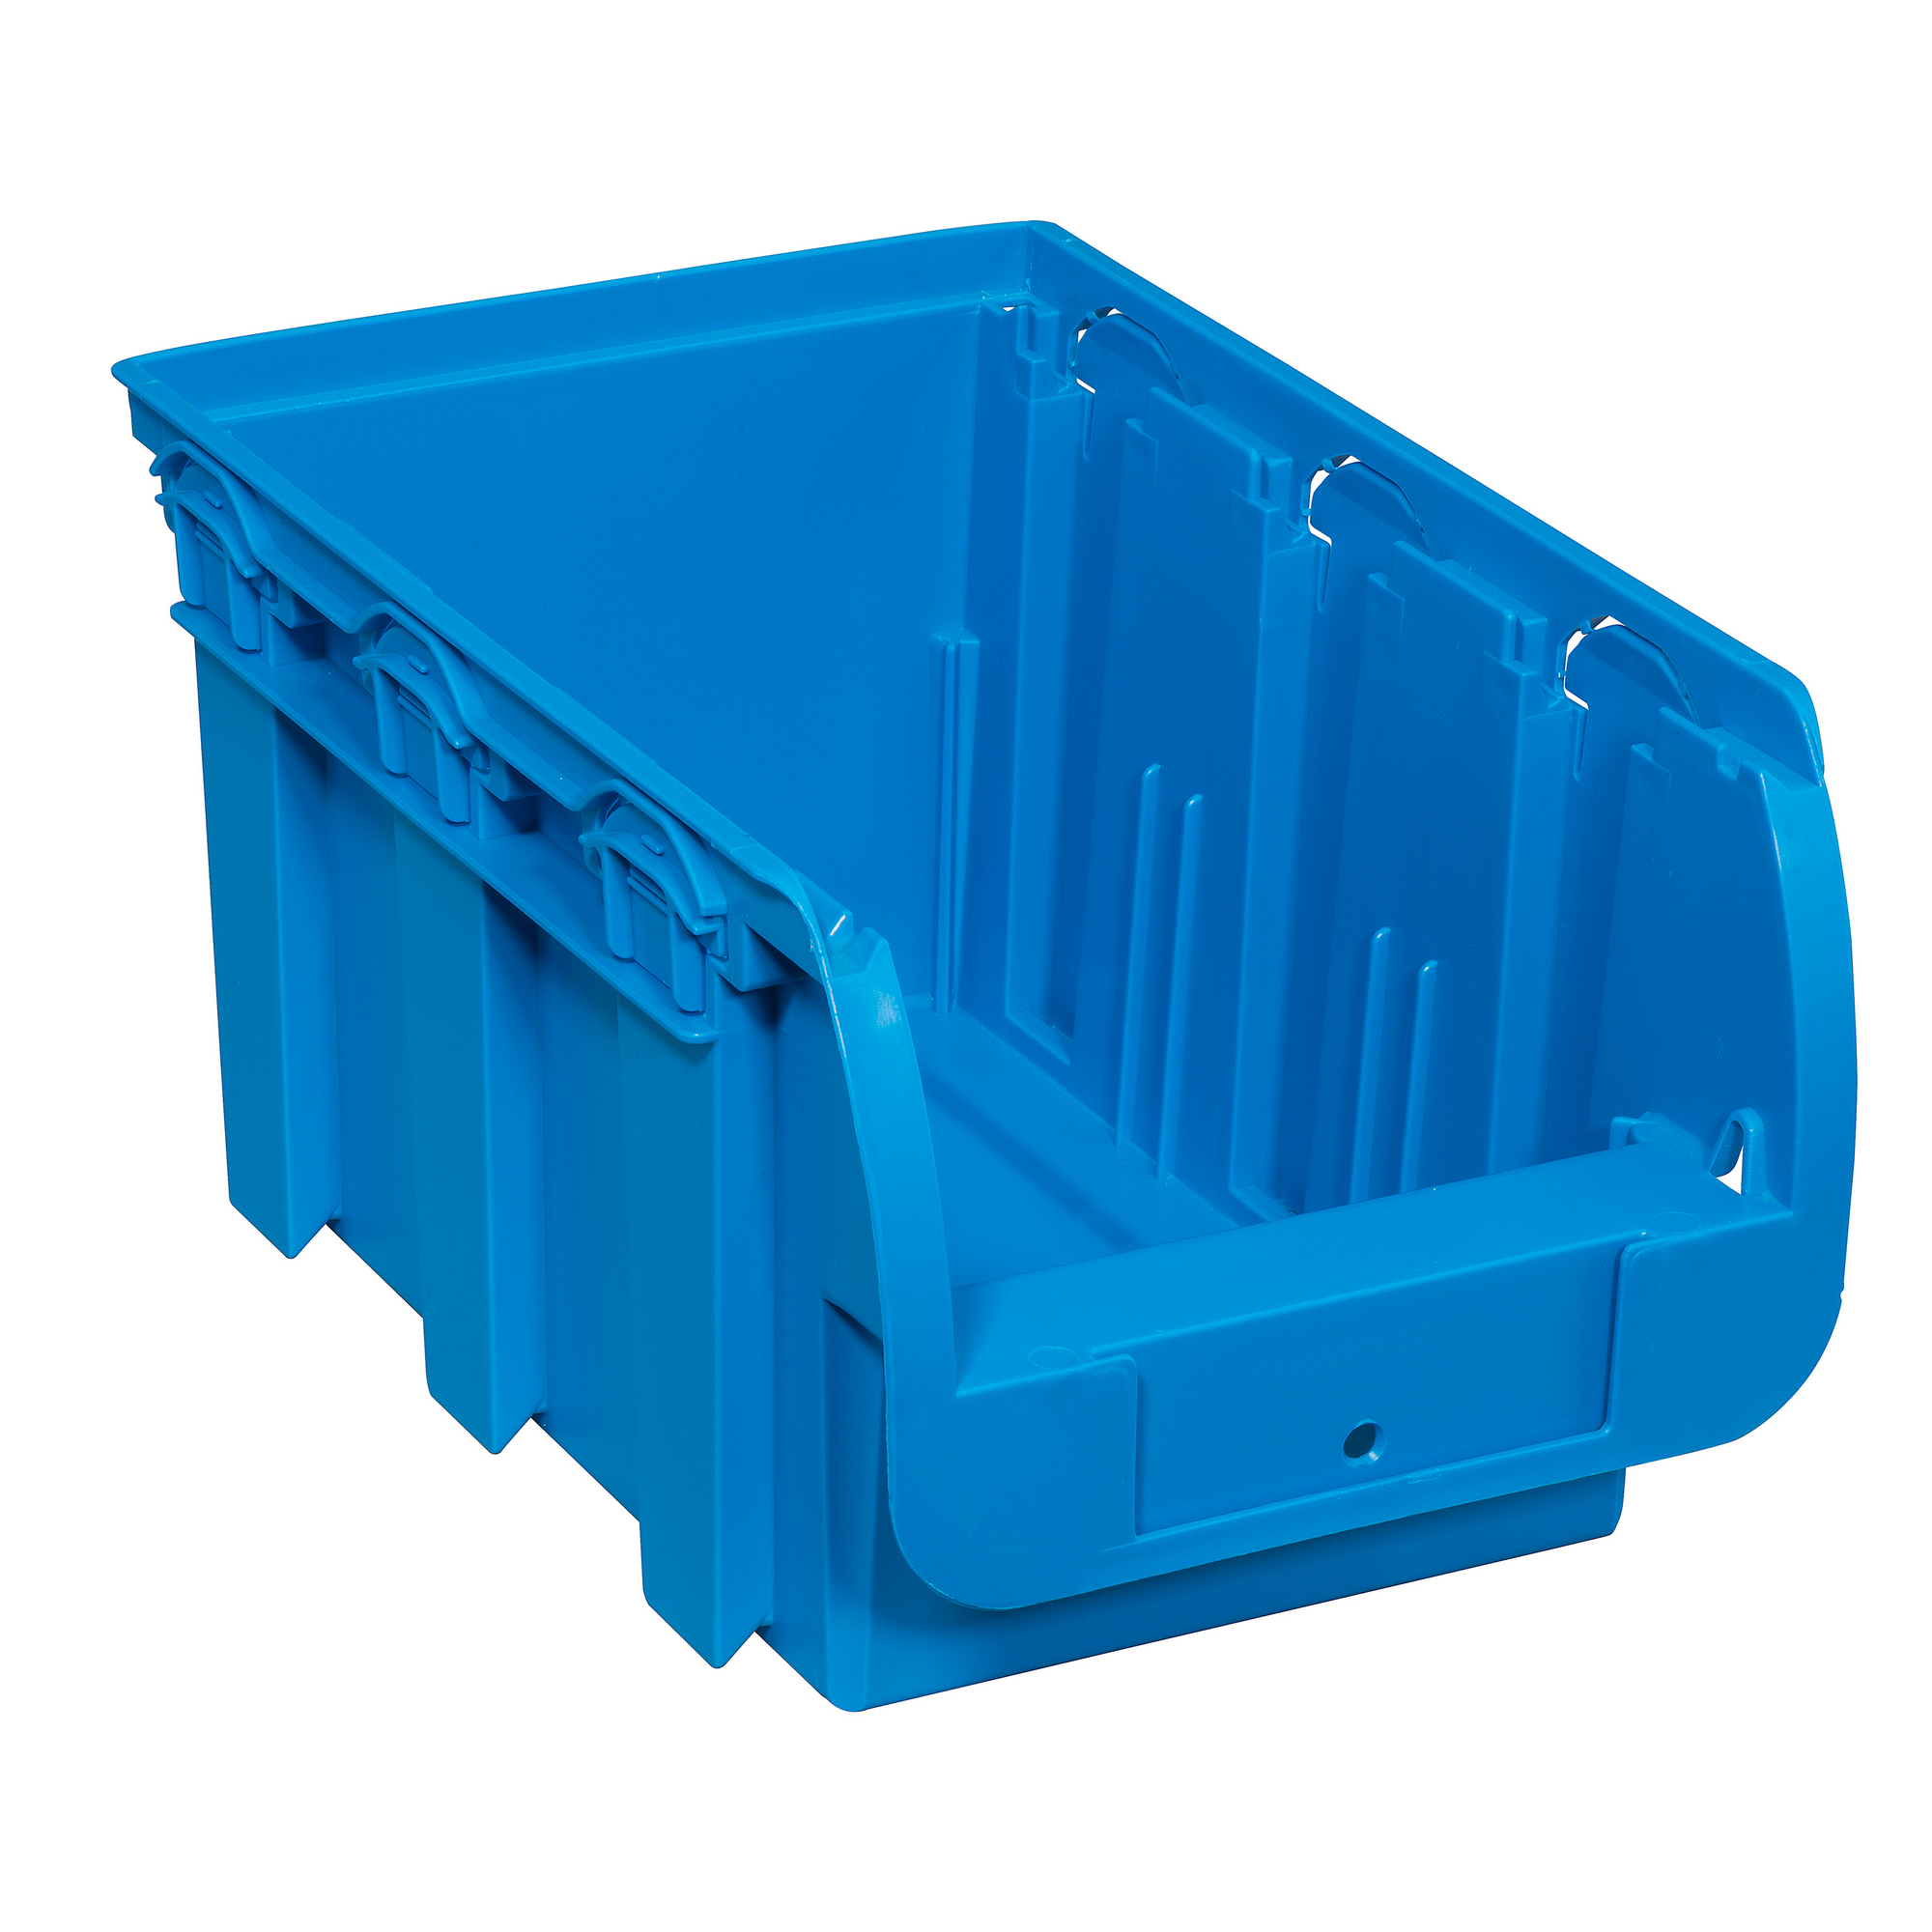 ProfiPlus Stapelsichtbox 'Compact 3' blau 23,5 x 15,5 x 12,5 cm + product picture